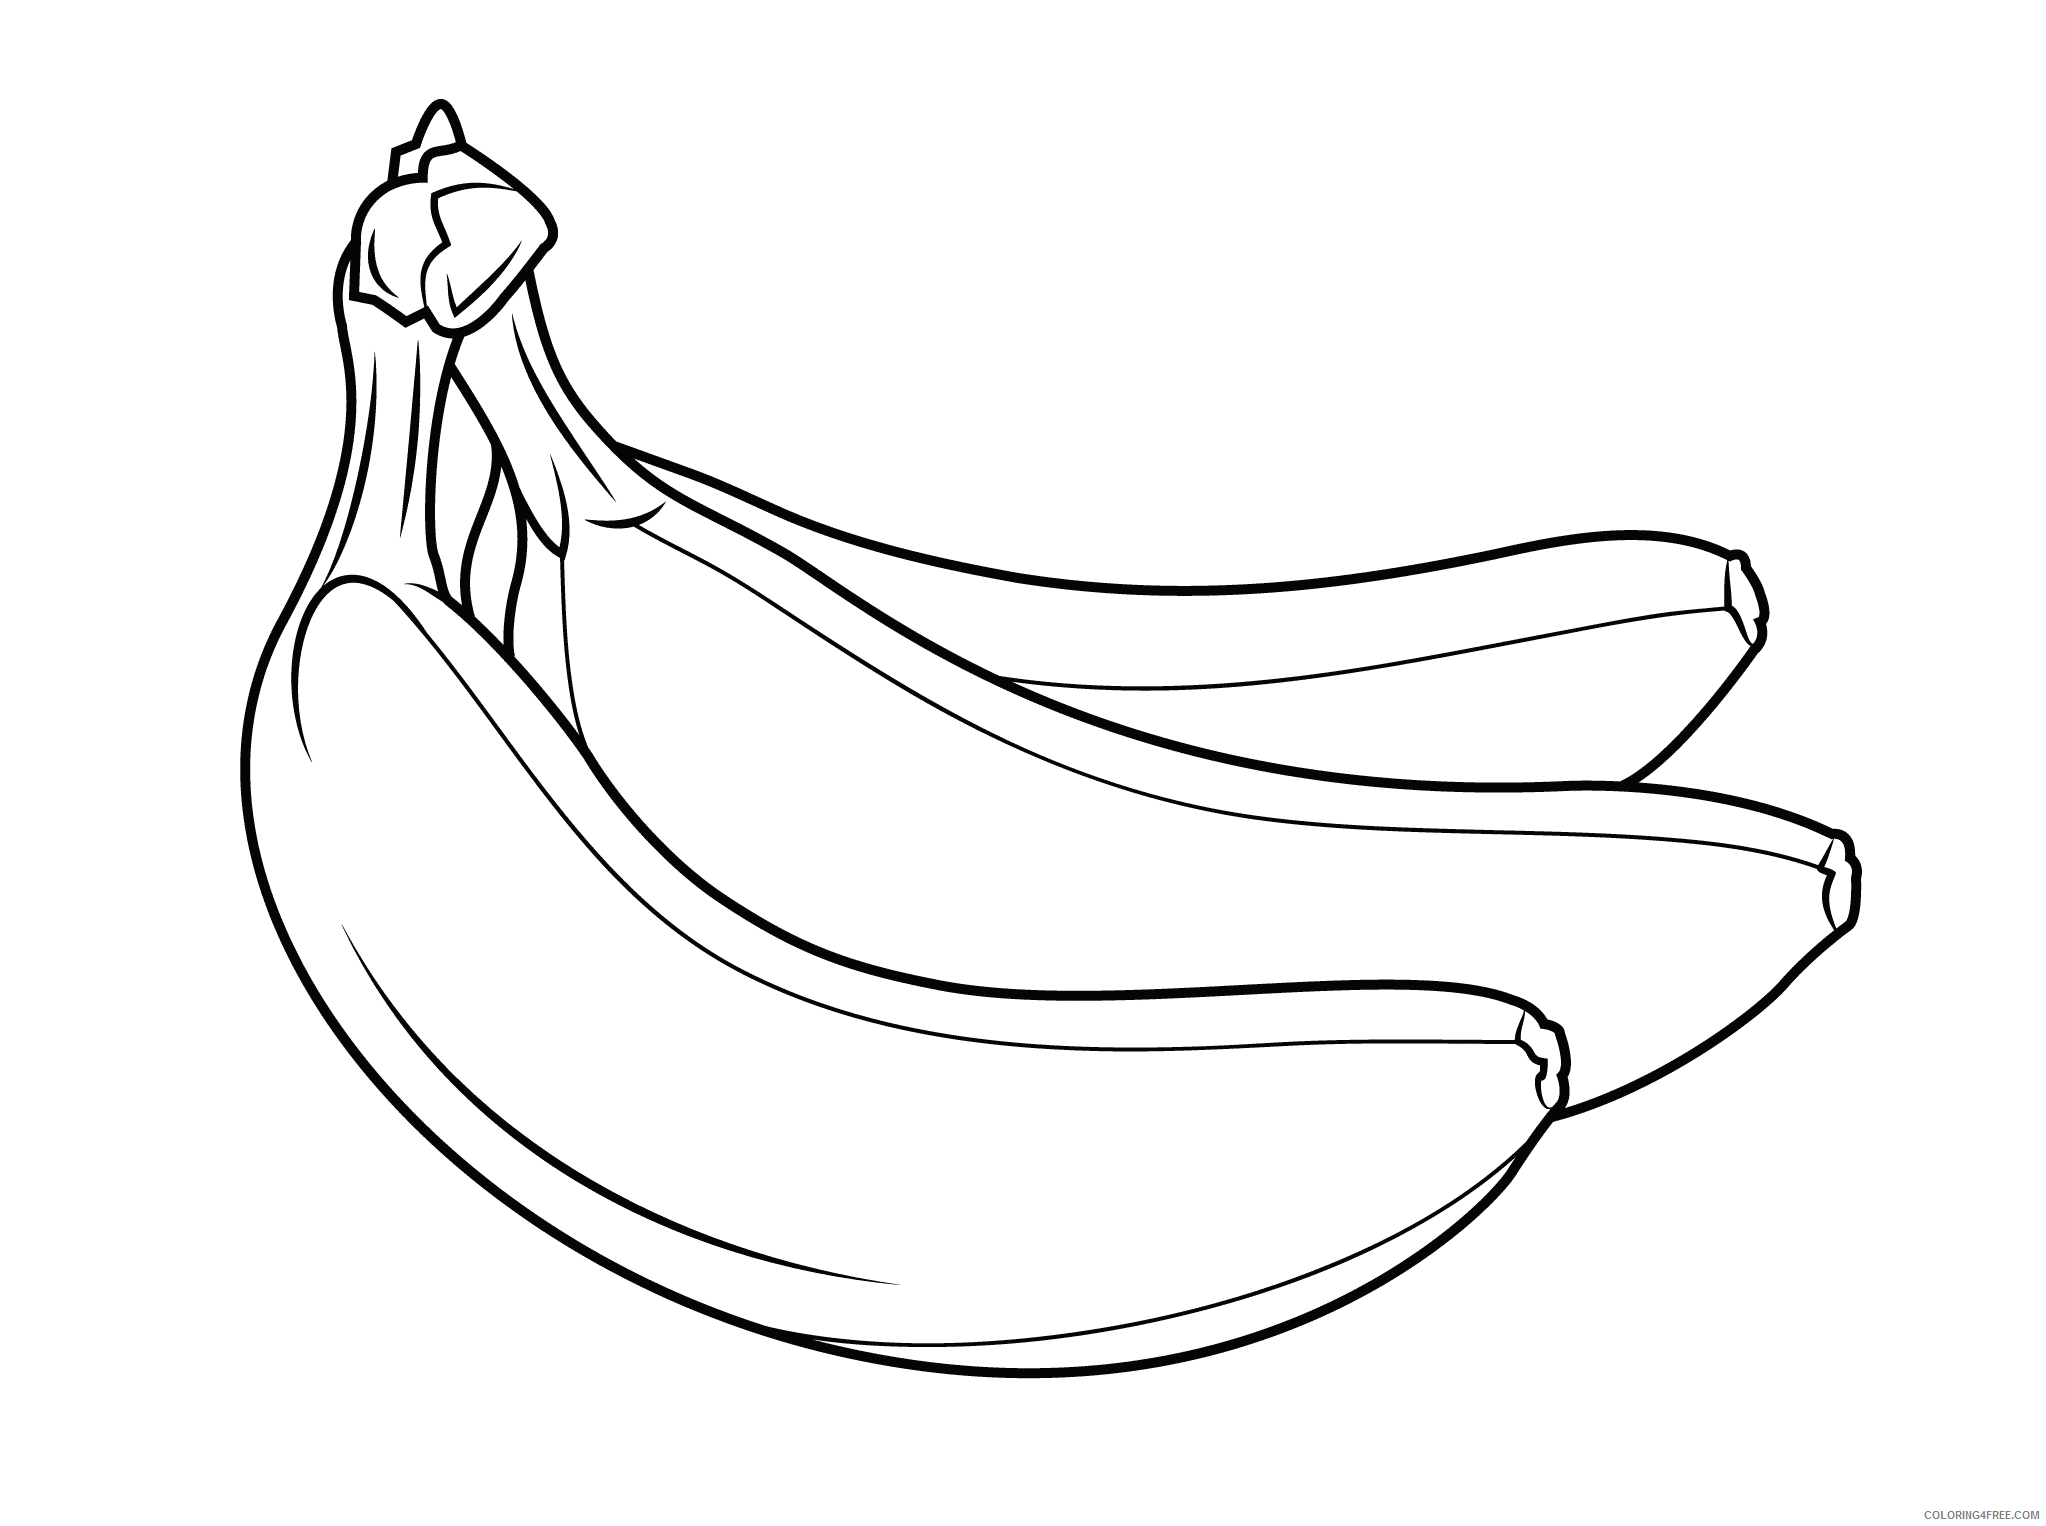 Banana Coloring Pages Fruits Food Banana Fruit Printable 2021 077 Coloring4free